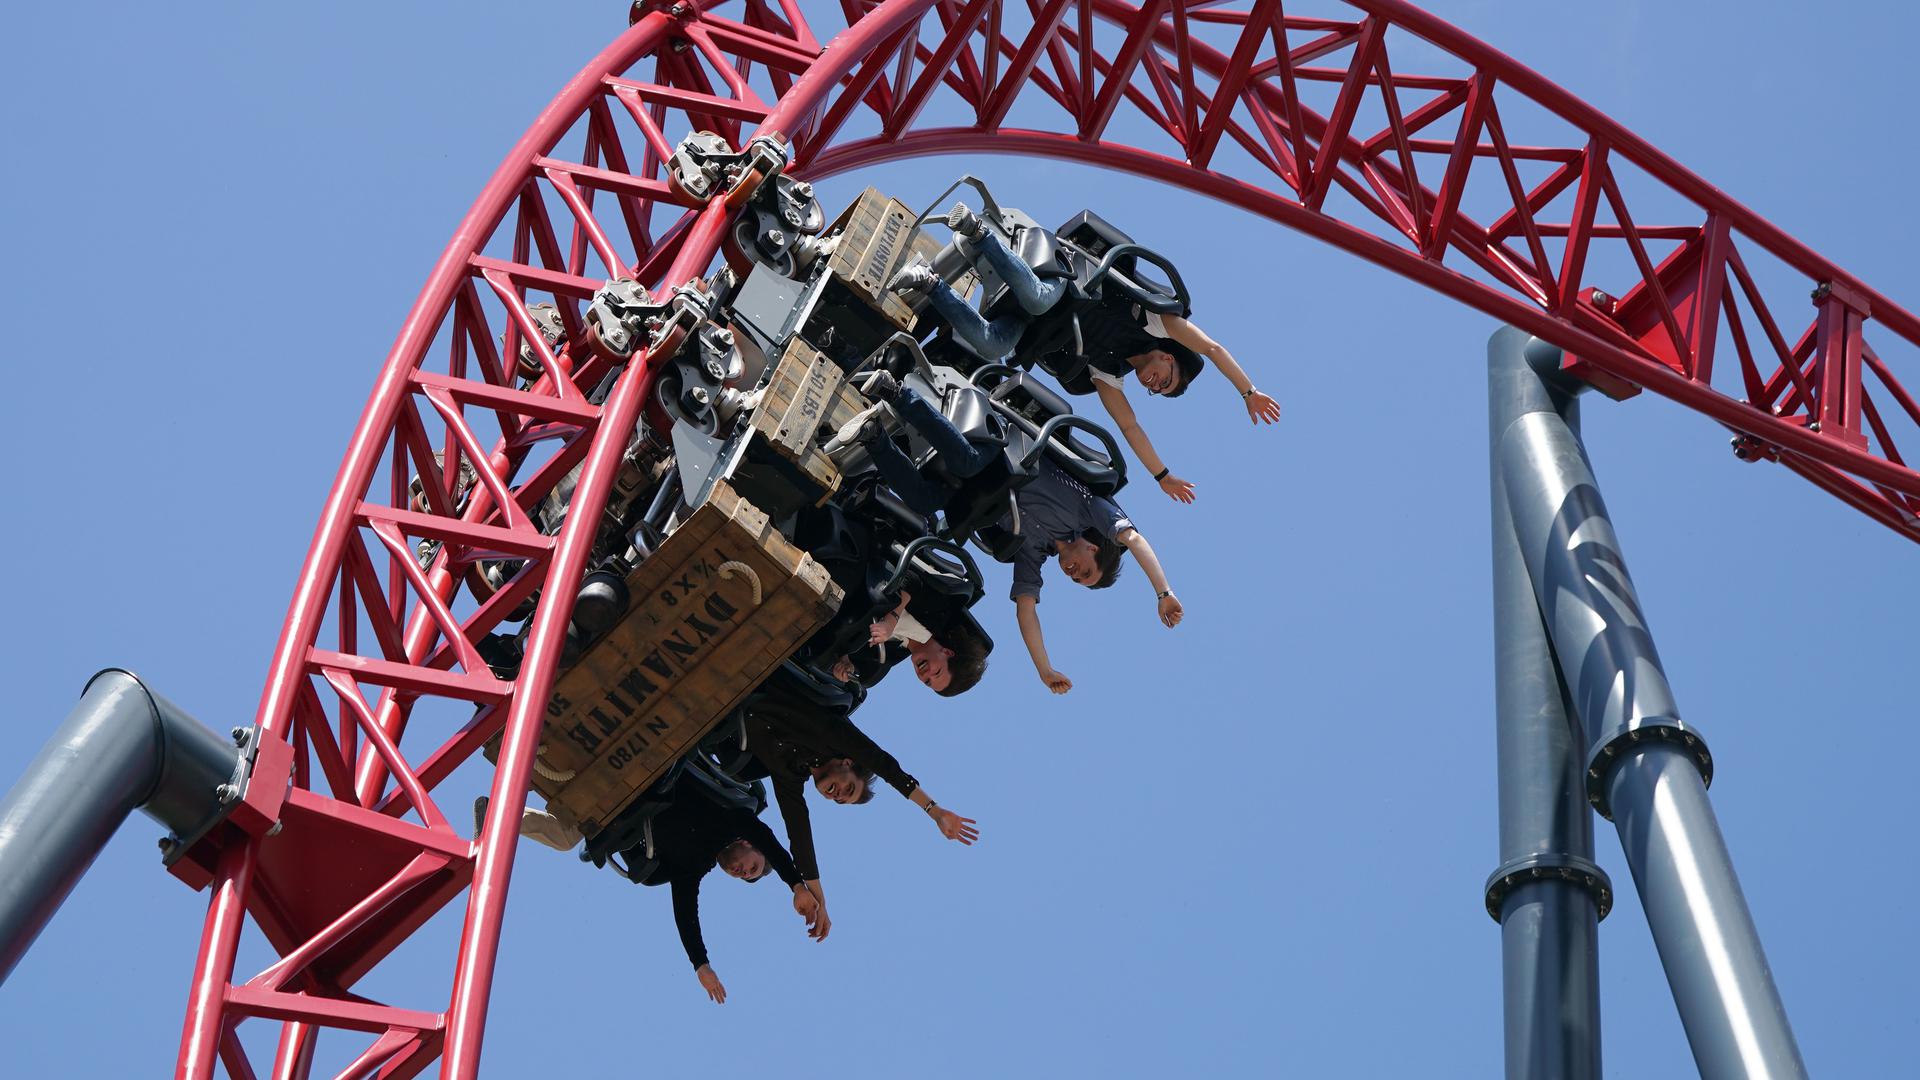 Besucher fahren in der neuen Riesen-Achterbahn "Dynamite" zur Saisoneröffnung im Freizeitpark Plohn. +++ dpa-Bildfunk +++